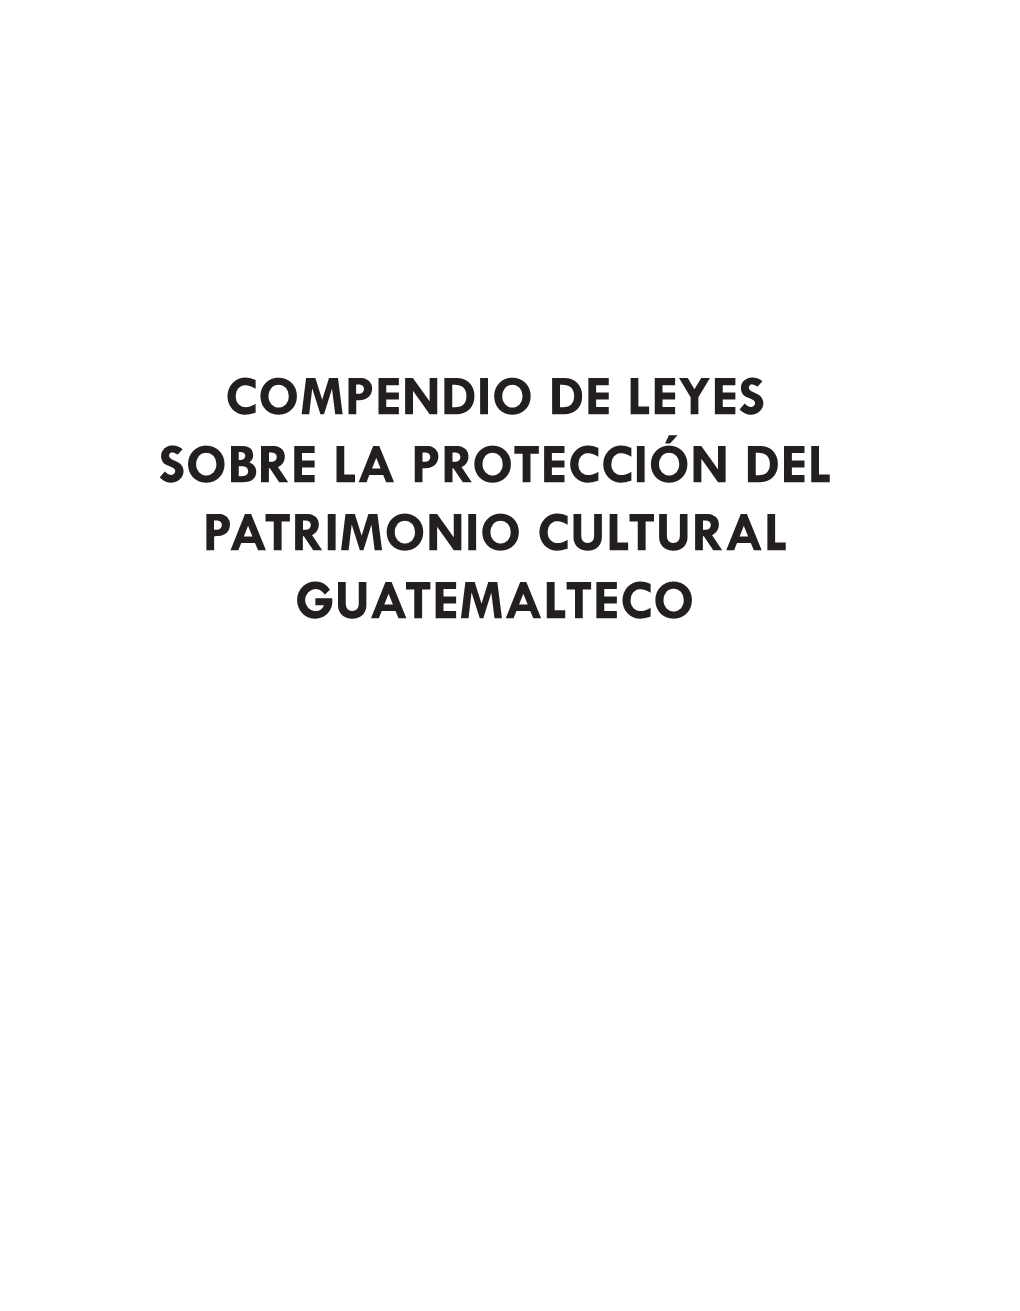 COMPENDIO DE LEYES SOBRE LA PROTECCIÓN DEL PATRIMONIO CULTURAL GUATEMALTECO Título: COMPENDIO DE LEYES SOBRE LA PROTECCIÓN DEL PATRIMONIO CULTURAL GUATEMALTECO